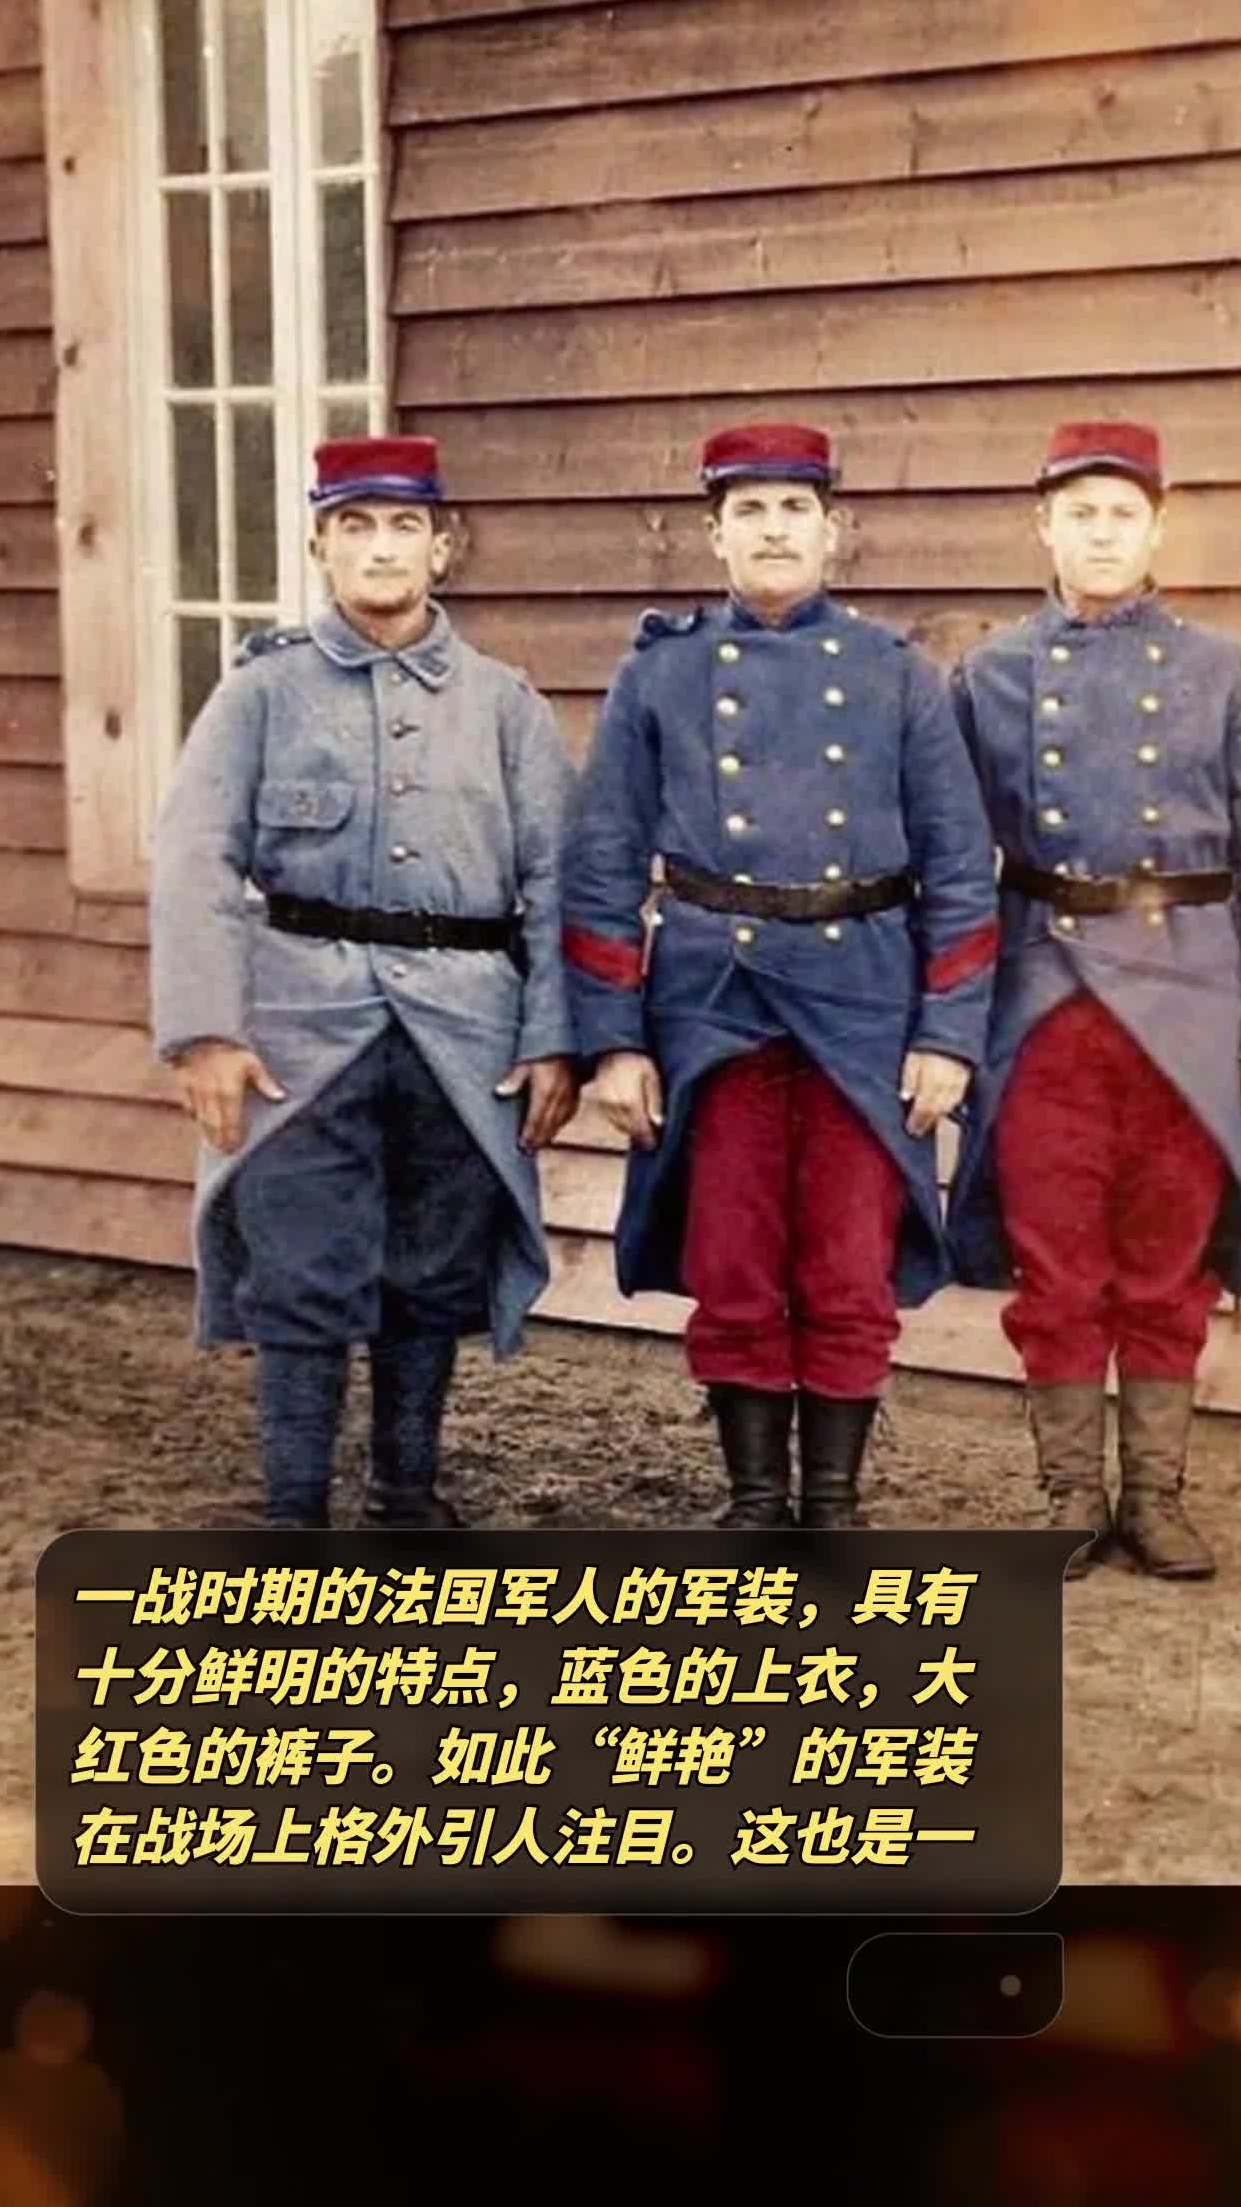 一战时期的法国军人的军装,具有十分鲜明的特点,蓝色